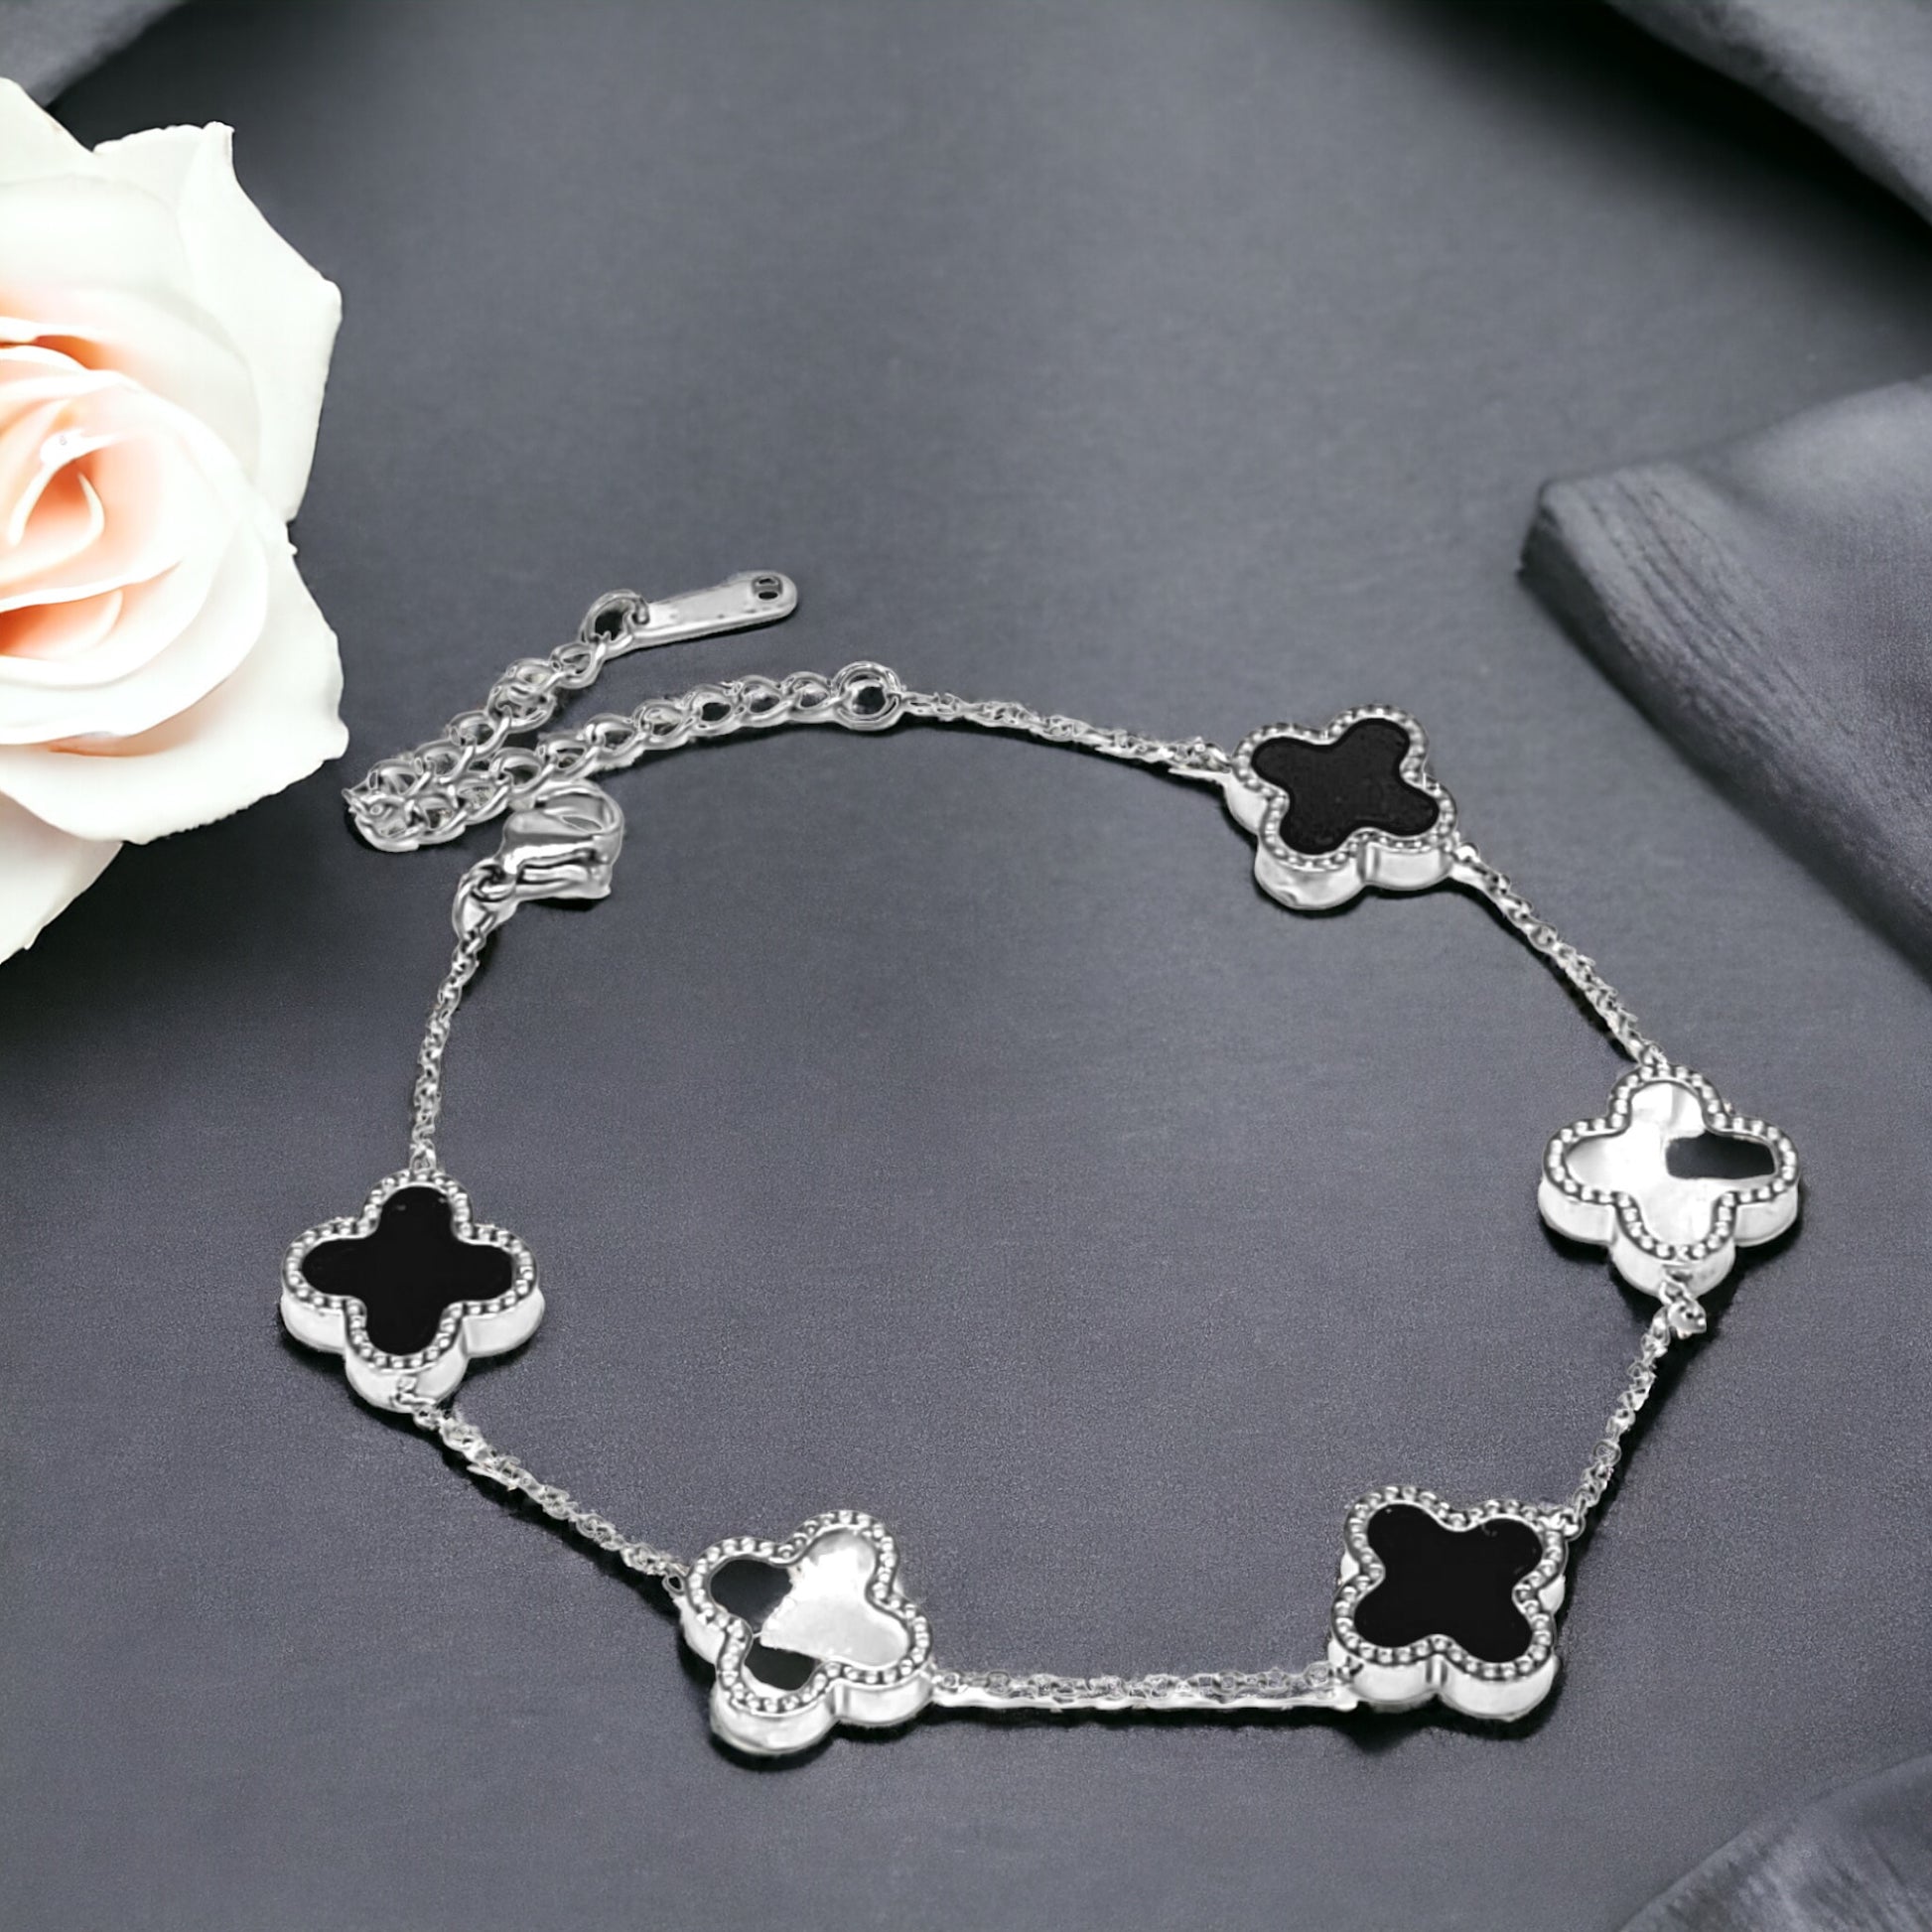 Silver Stainless Steel 5 Clover Bracelet - Marisa's Shopping Network 